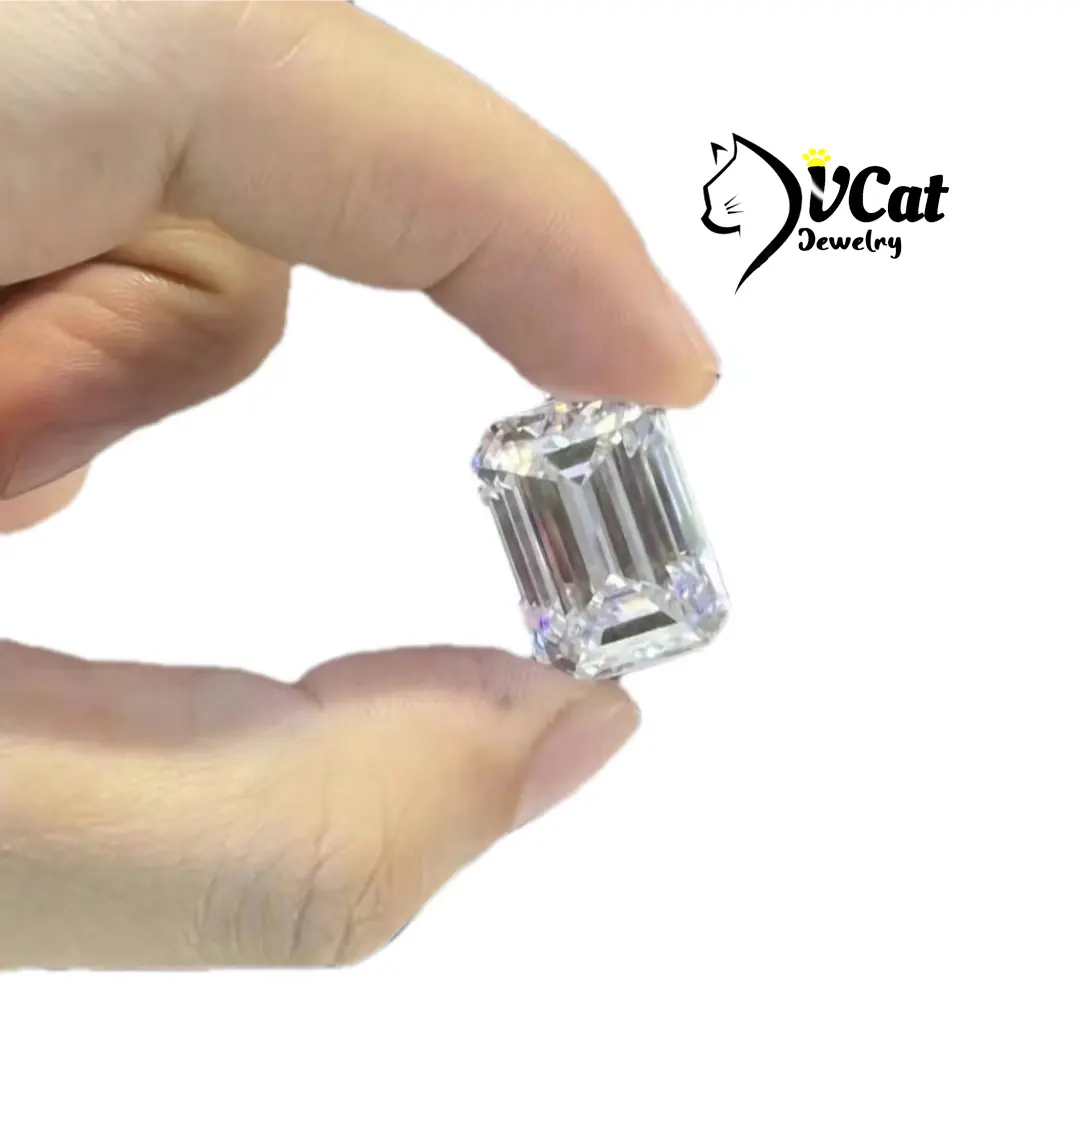 Prix de gros Moissanite en vrac taille émeraude 2*4mm -12*14mm Gra DVvs DEFVVS blanc forme fantaisie Moissanite diamant